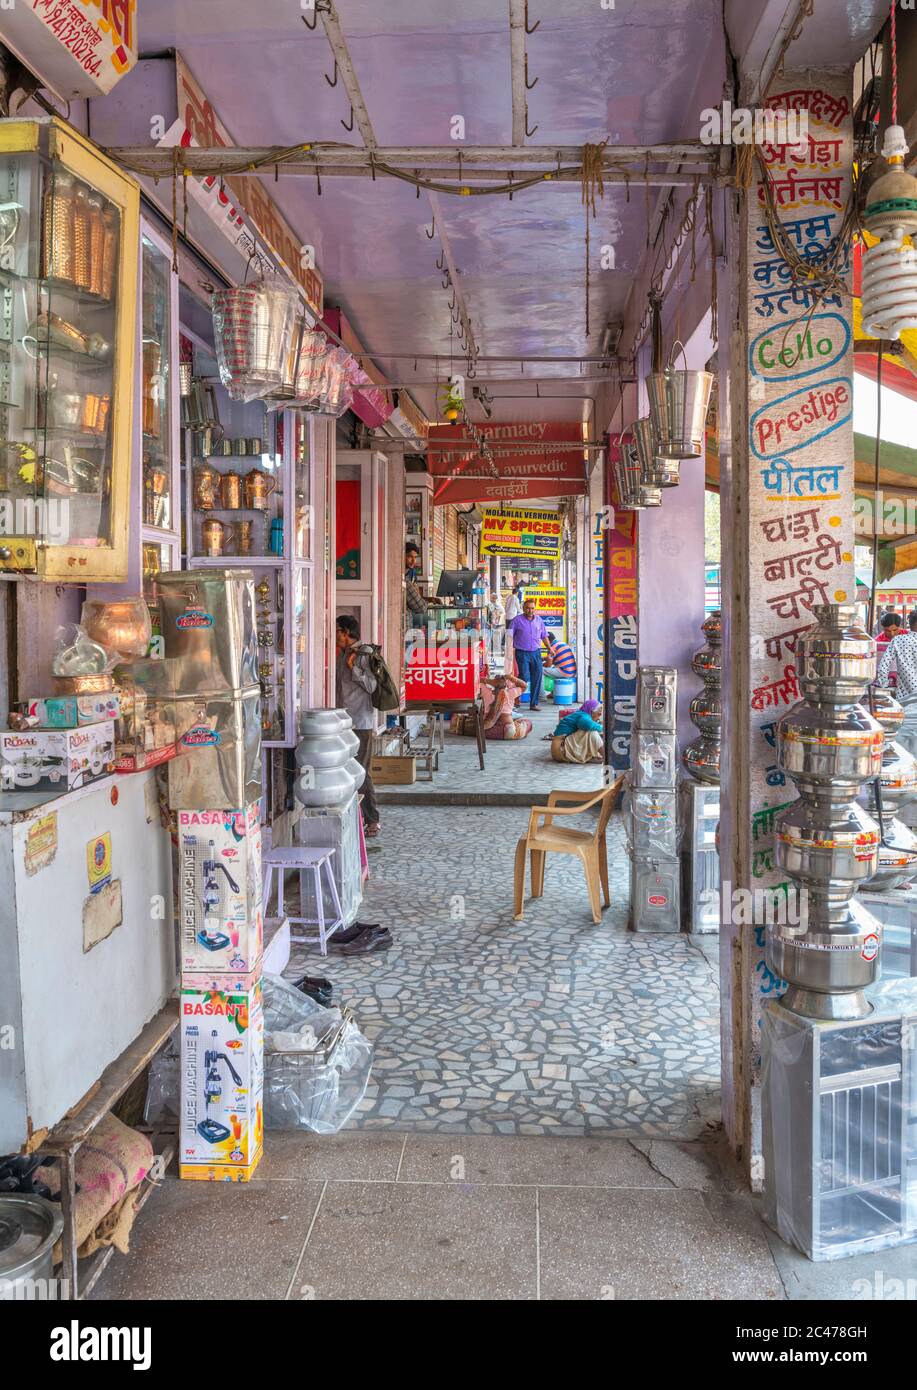 Tiendas en Nai Sarak, una calle muy transitada en el centro de la ciudad, Jodhpur, Rajasthan, India Foto de stock